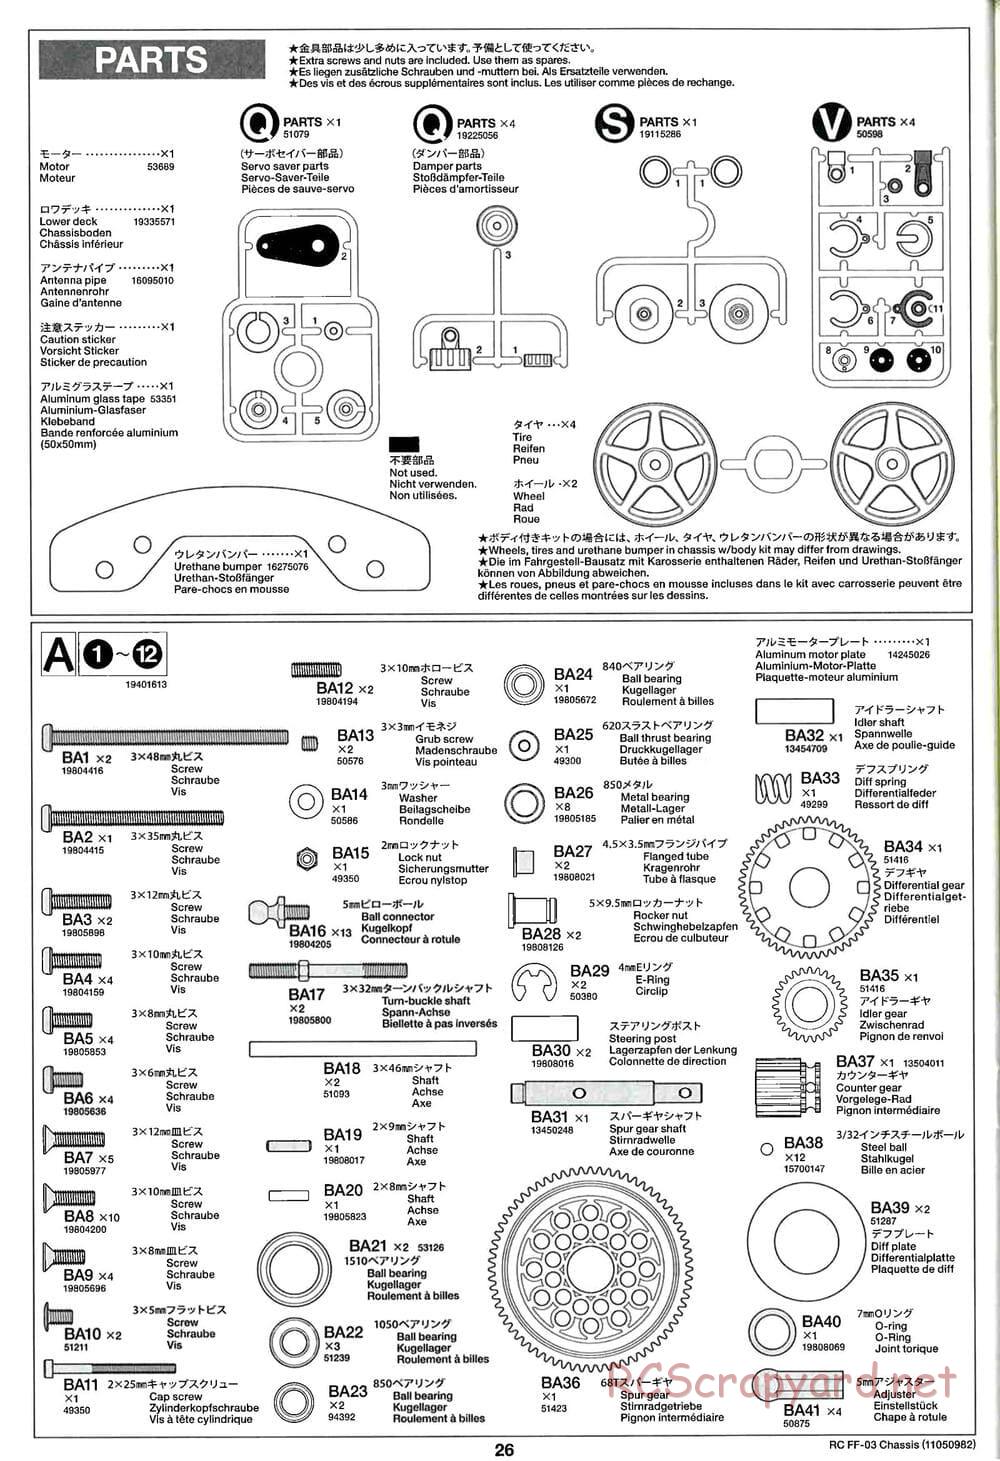 Tamiya - Honda CR-Z - FF-03 Chassis - Manual - Page 26